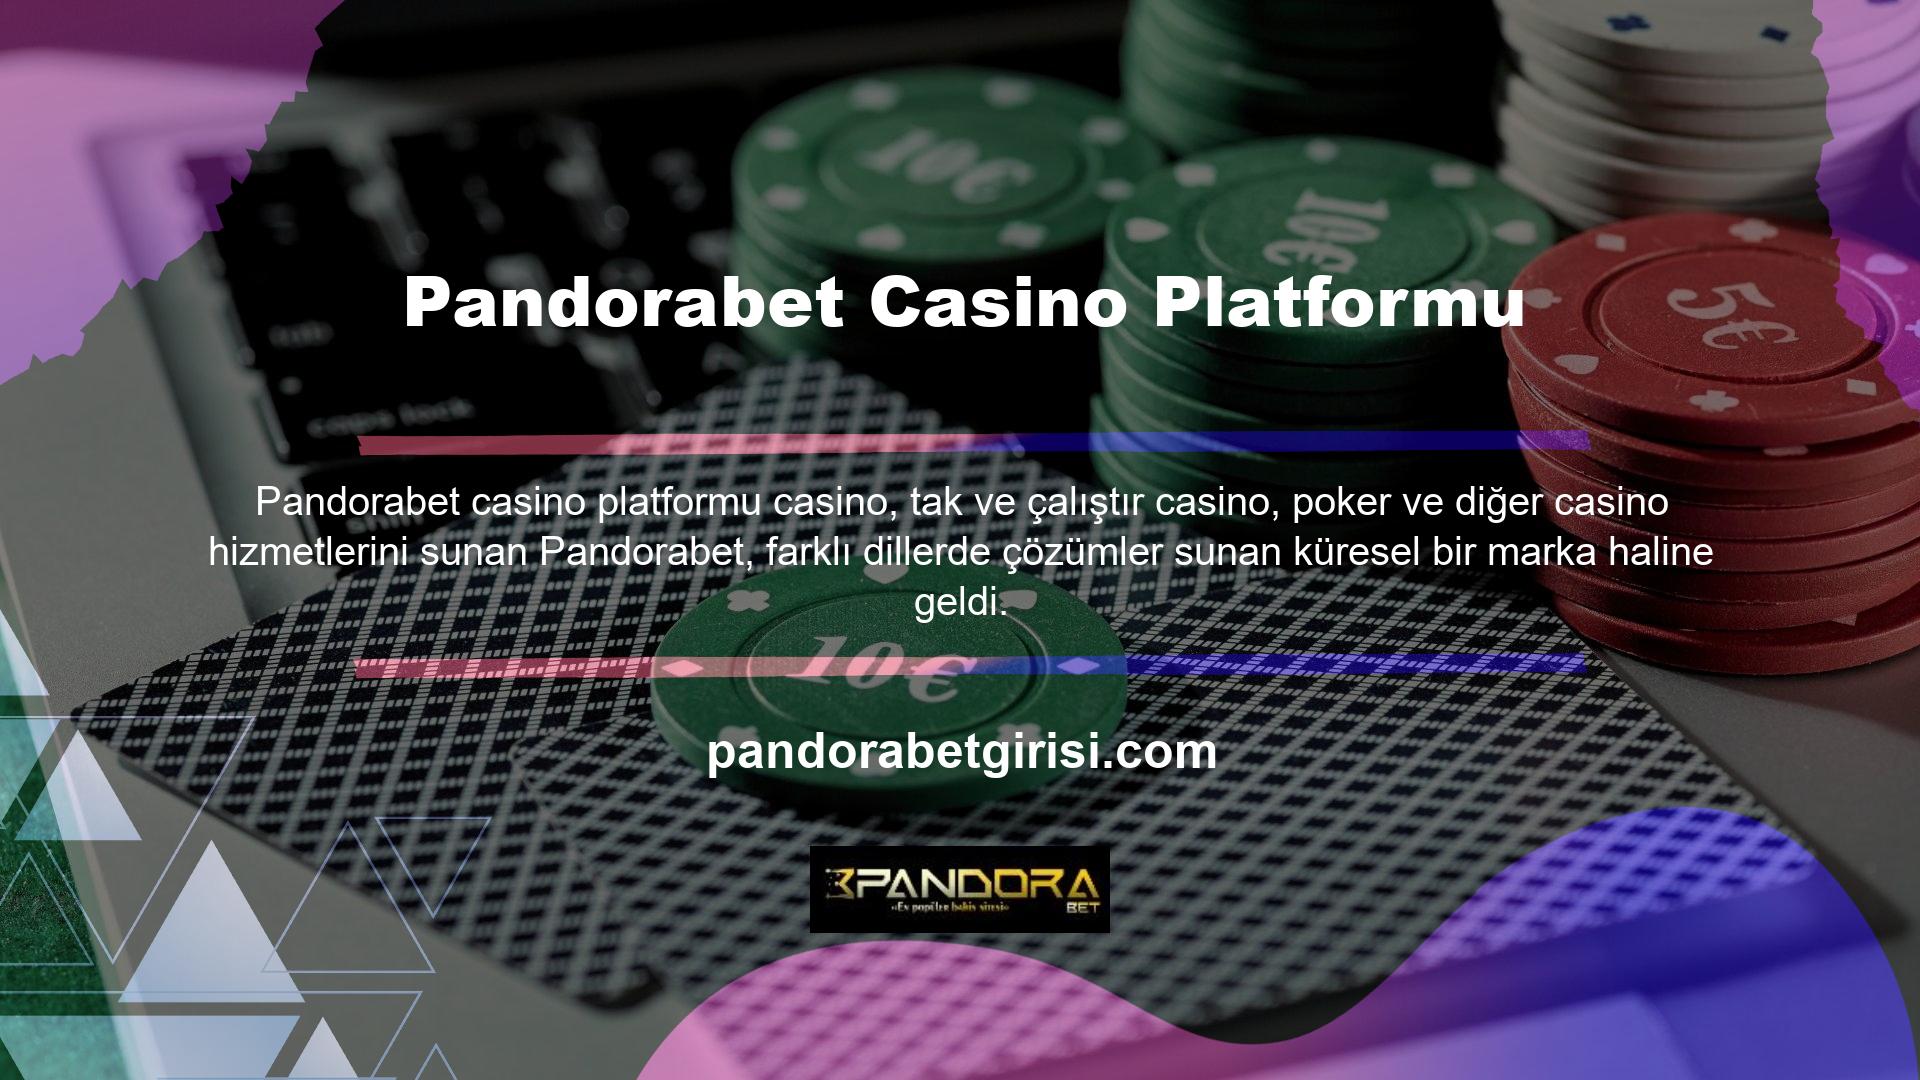 Pandorabet kısa sürede çok geniş bir müşteri kitlesine sahip olduğu ve çeşitli bonus ve promosyonlarla geniş bir kitleyi çekmeye çalıştığı için Türk bahis numaraları net ve benzersiz olacak şekilde tasarlanmıştır